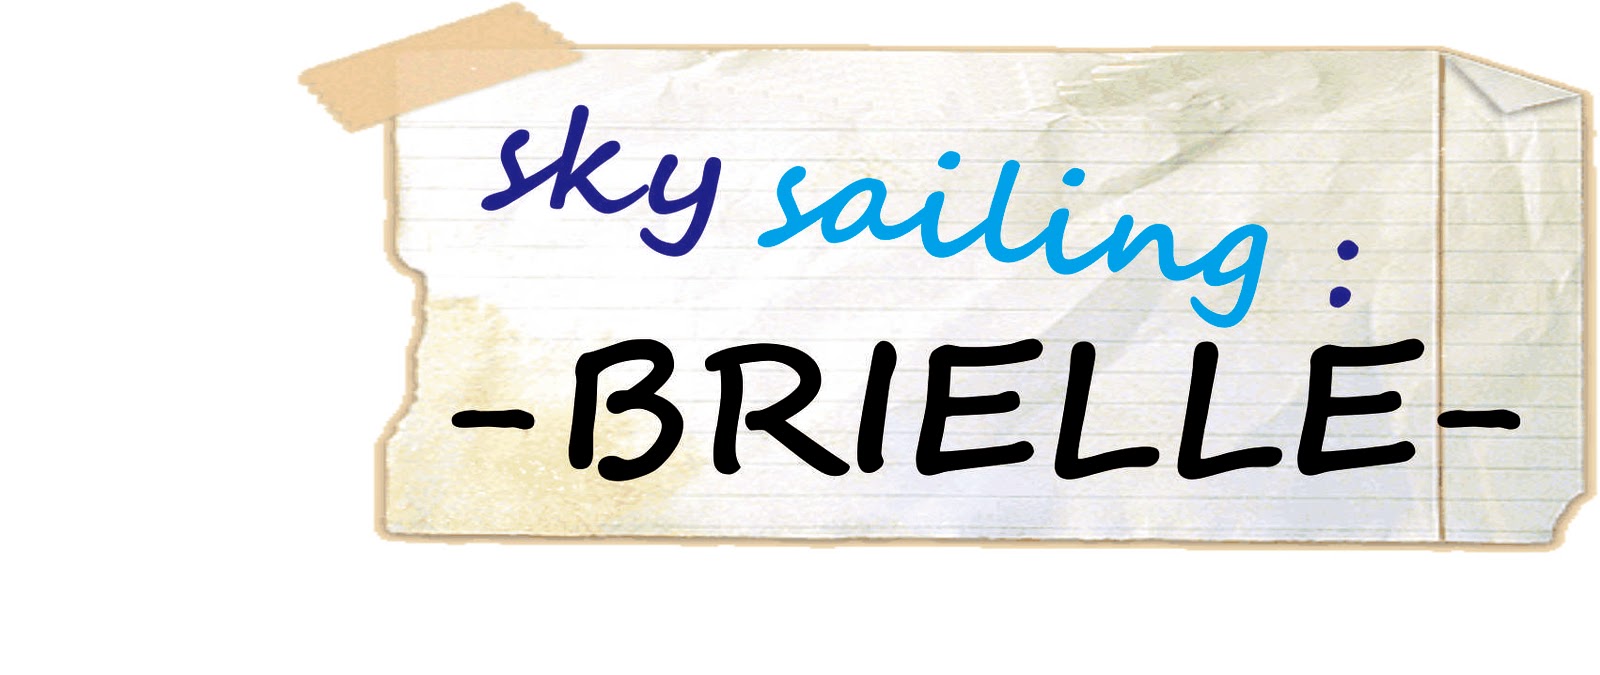 Brielle Sky Sailing